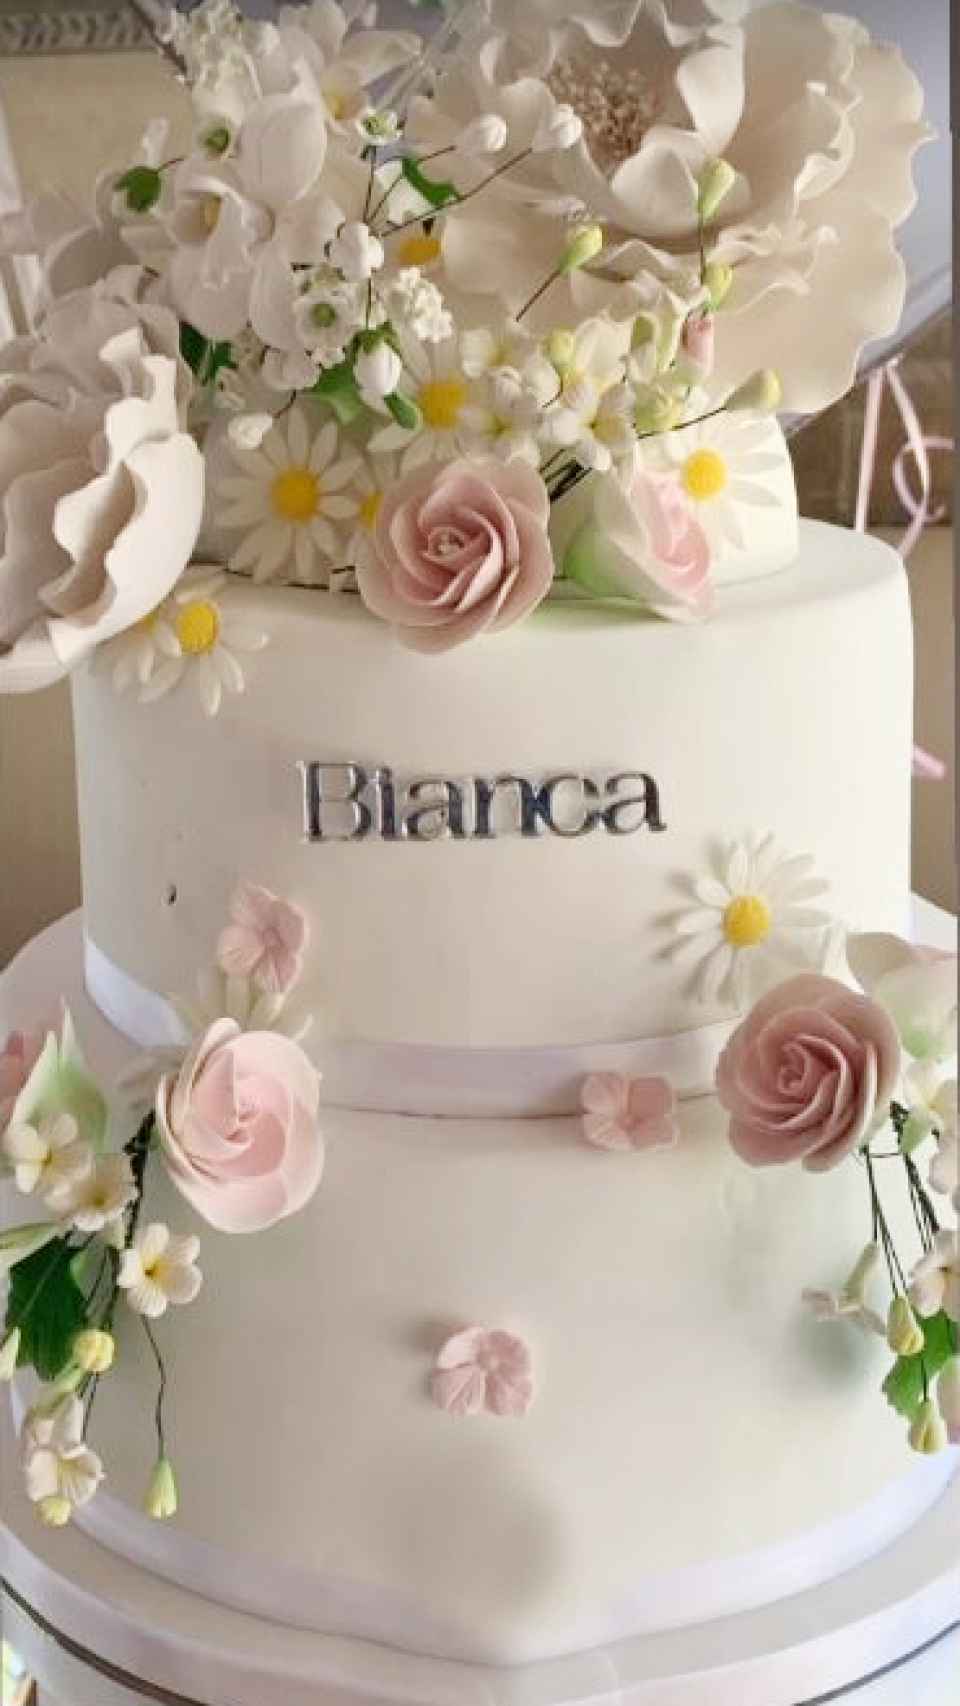 Vanesa Pinedo creó la tarta de la comunión de Bianca Ponce Cuevas.